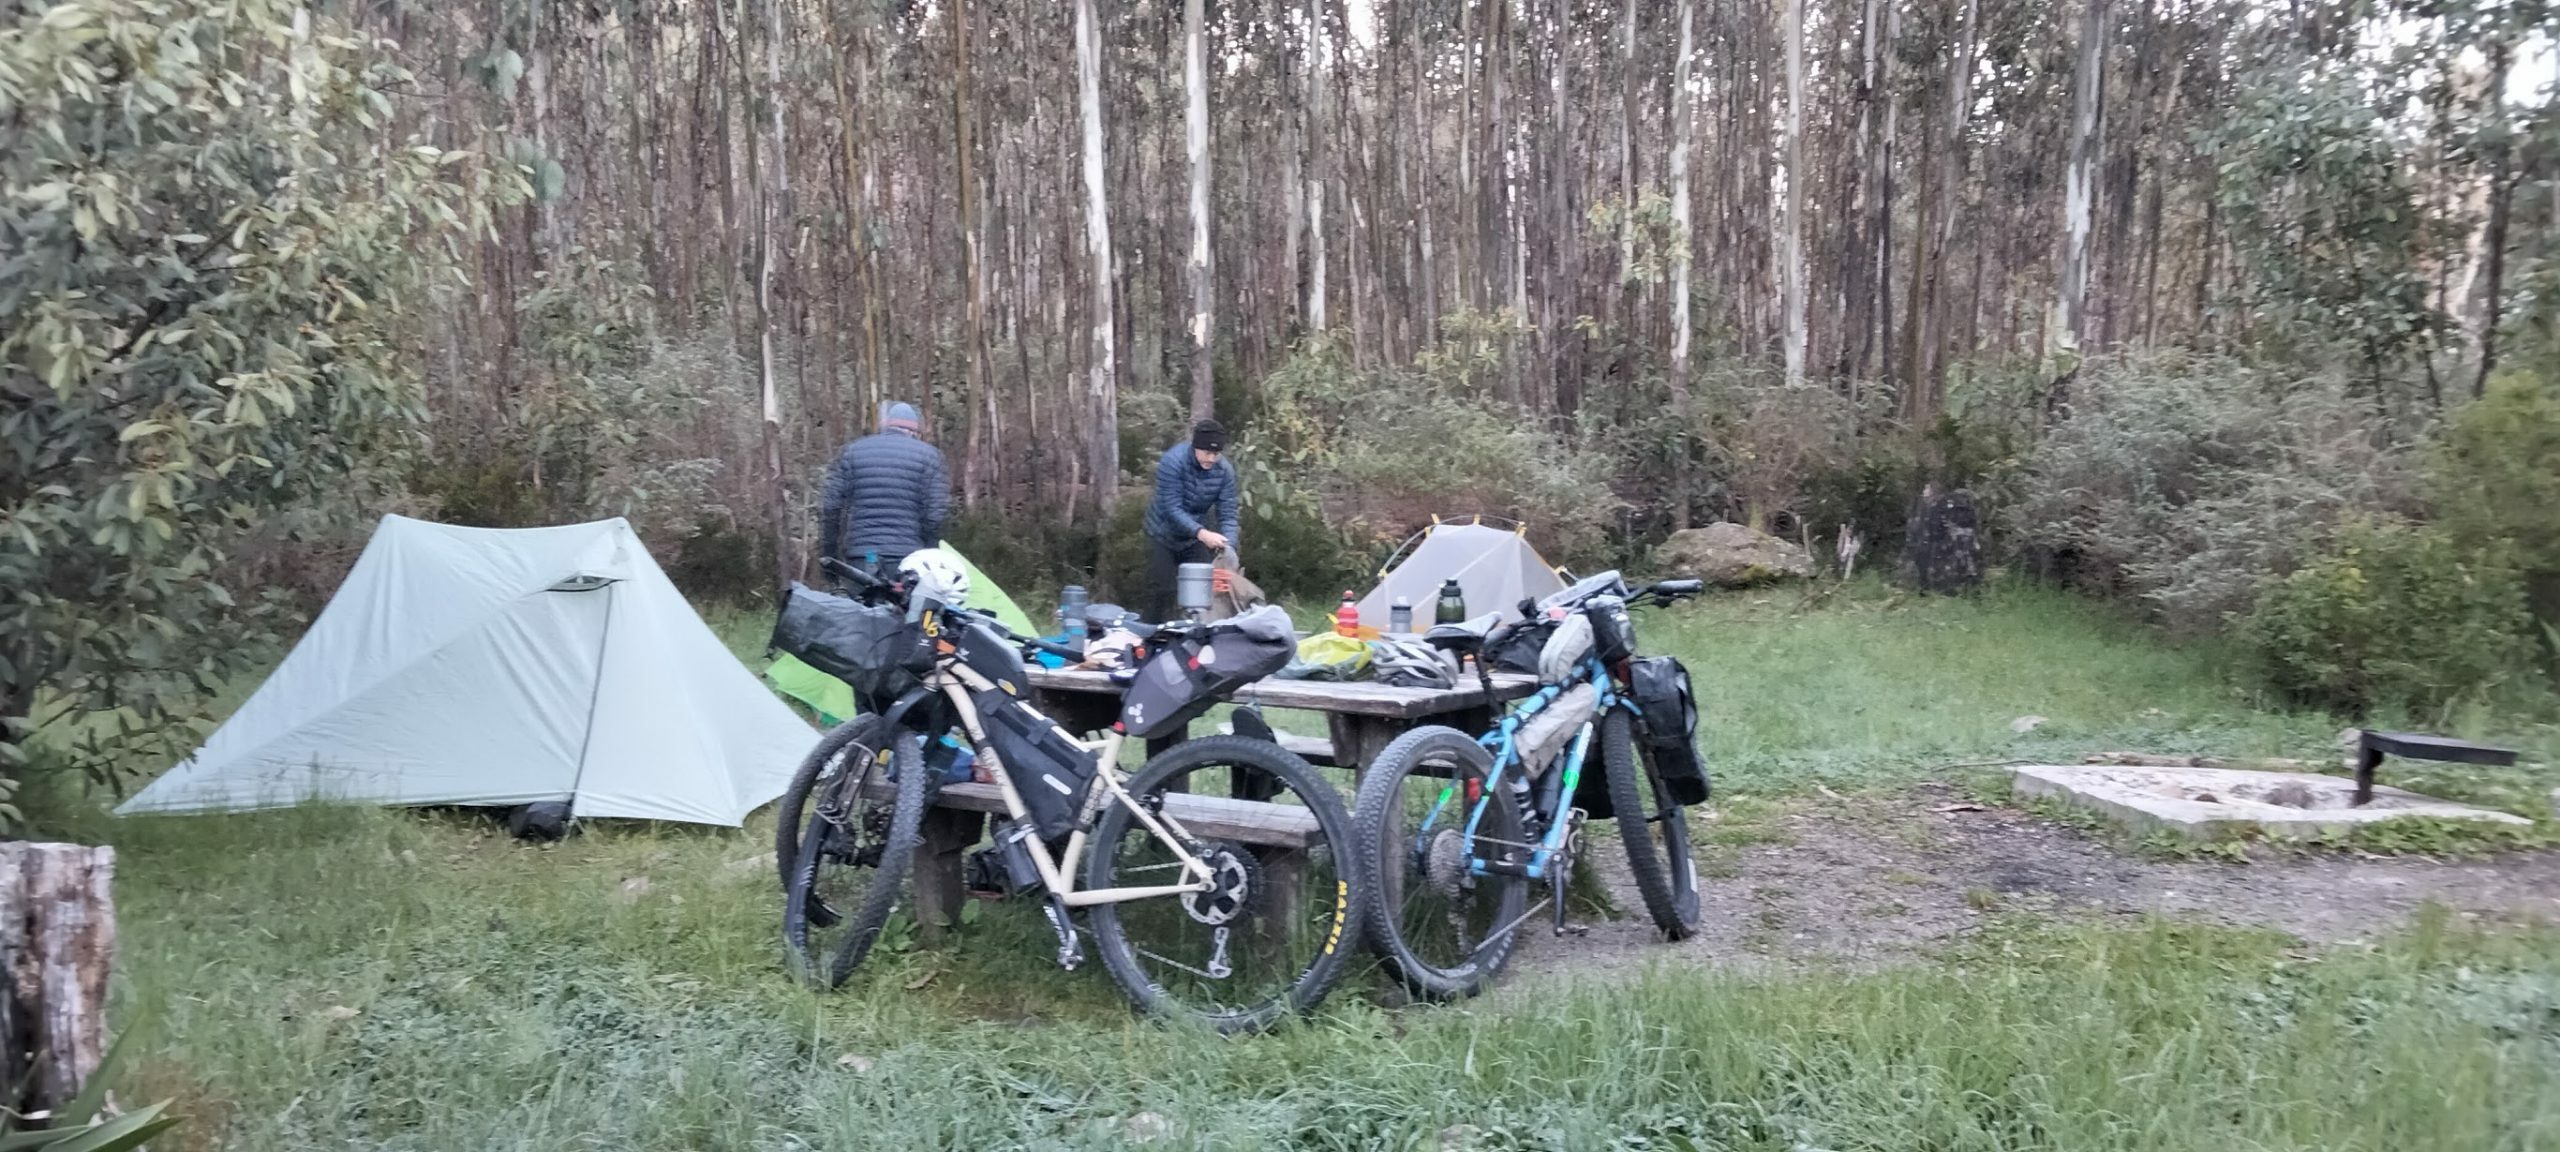 Bikepacking bikes around camp